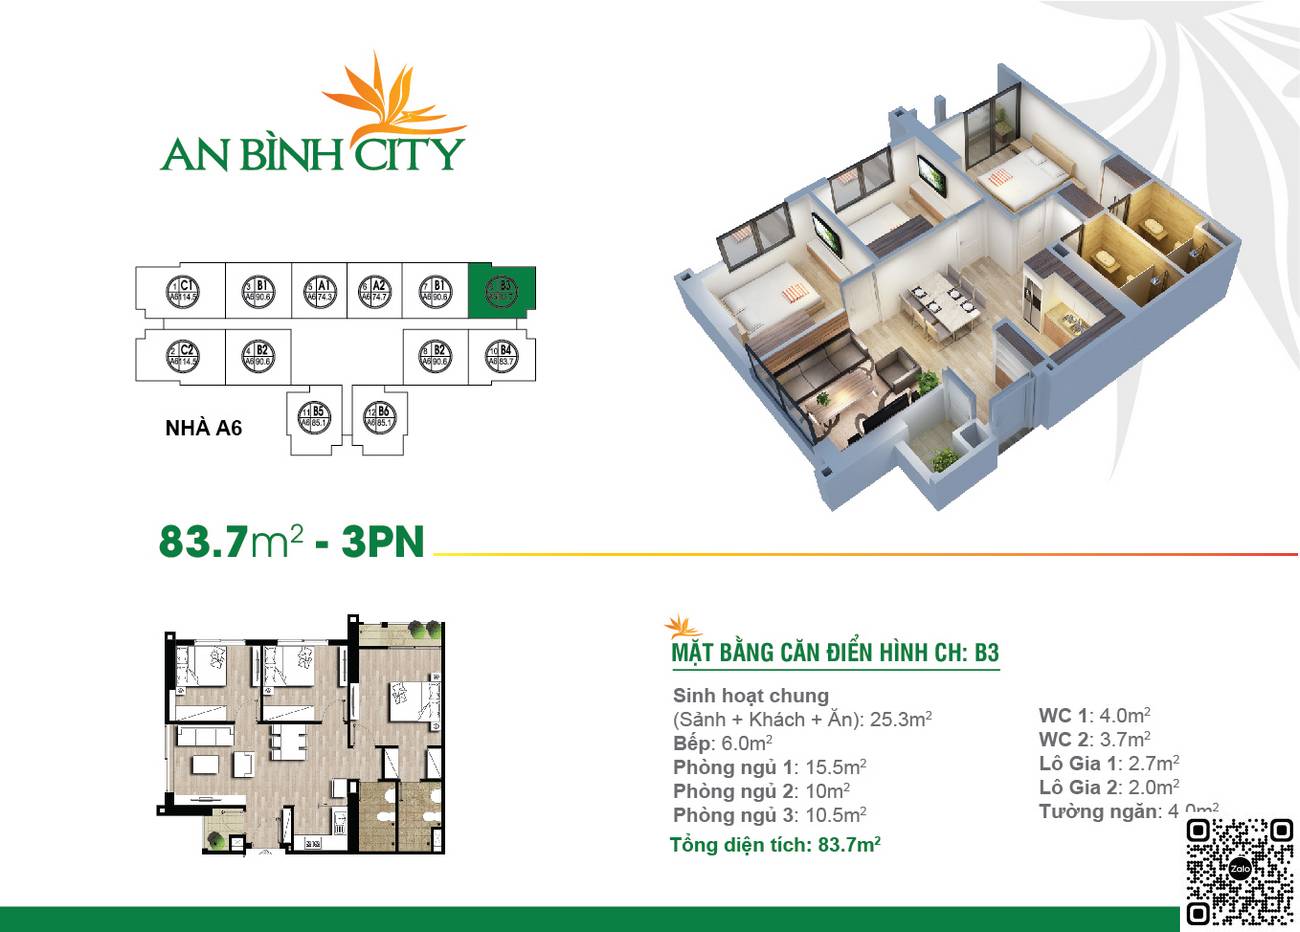 Thiết kế căn hộ 3PN dự án An Bình City Hà Nội